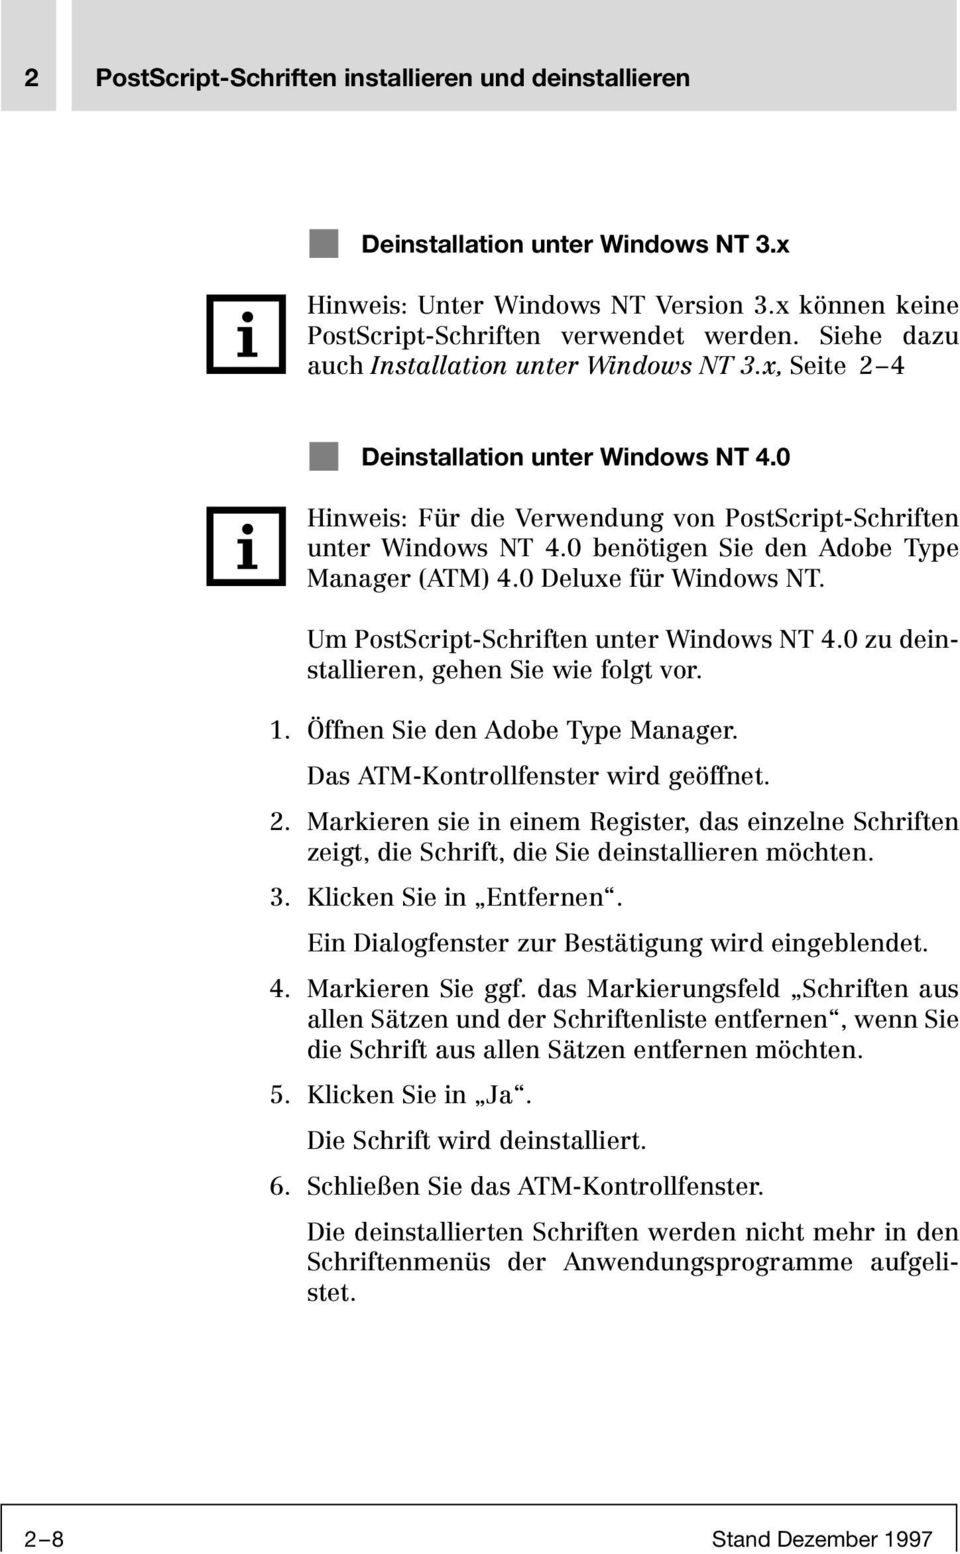 0 benötigen Sie den Adobe Type Manager (ATM) 4.0 Deluxe für Windows NT. Um PostScript-Schriften unter Windows NT 4.0 zu deinstallieren, gehen Sie wie folgt vor. 1. Öffnen Sie den Adobe Type Manager.